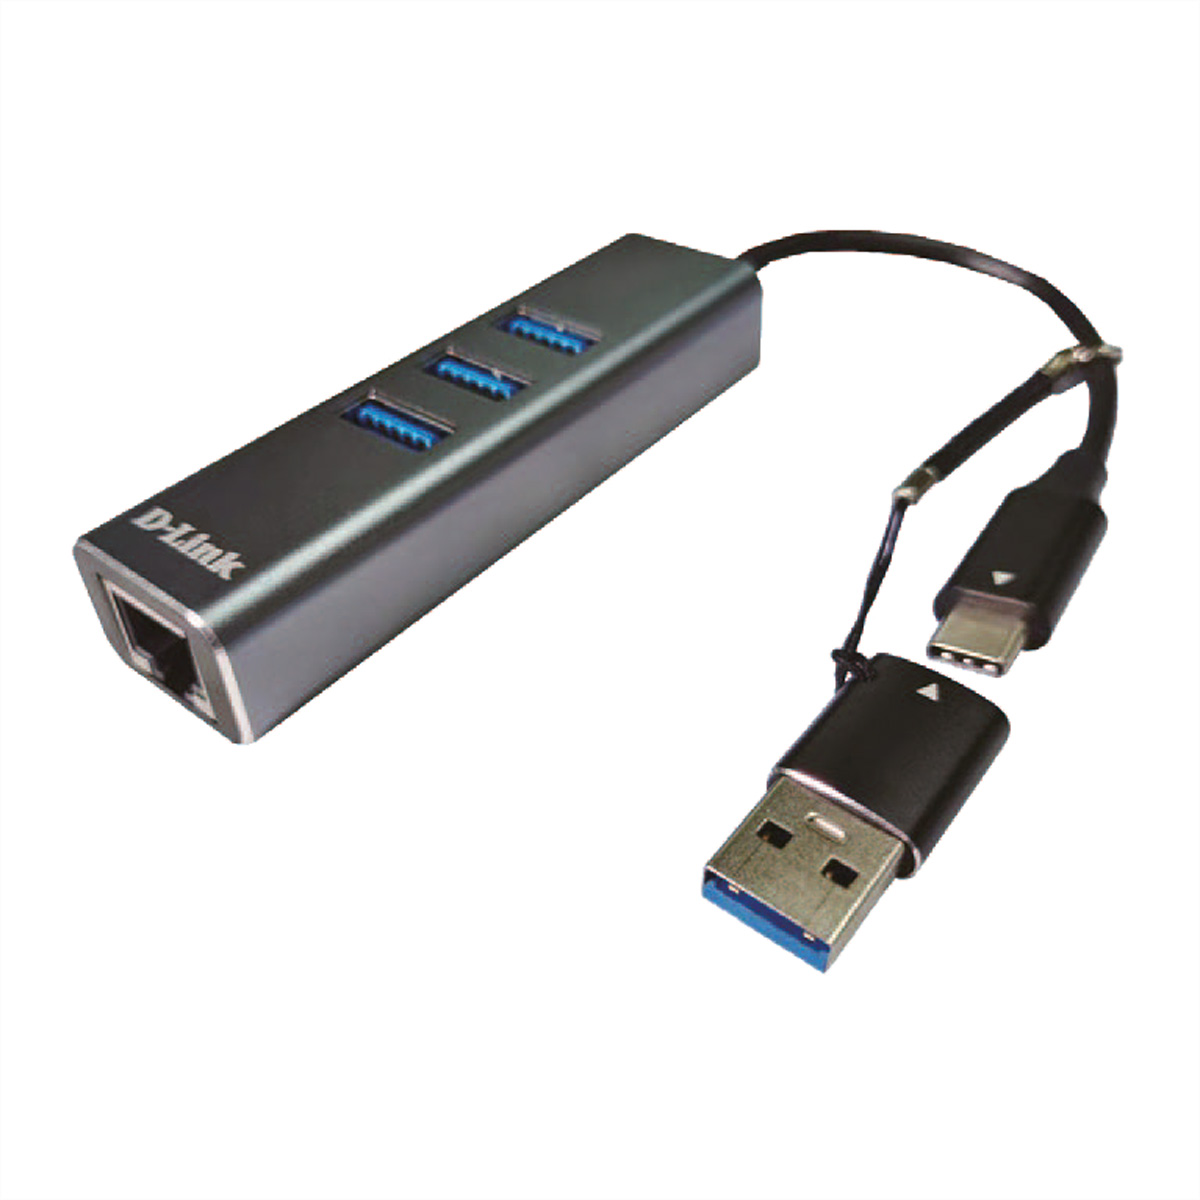 D-Link DUB-2332 USB-C Gigabit Adapter mit 3 USB3.0 Ports